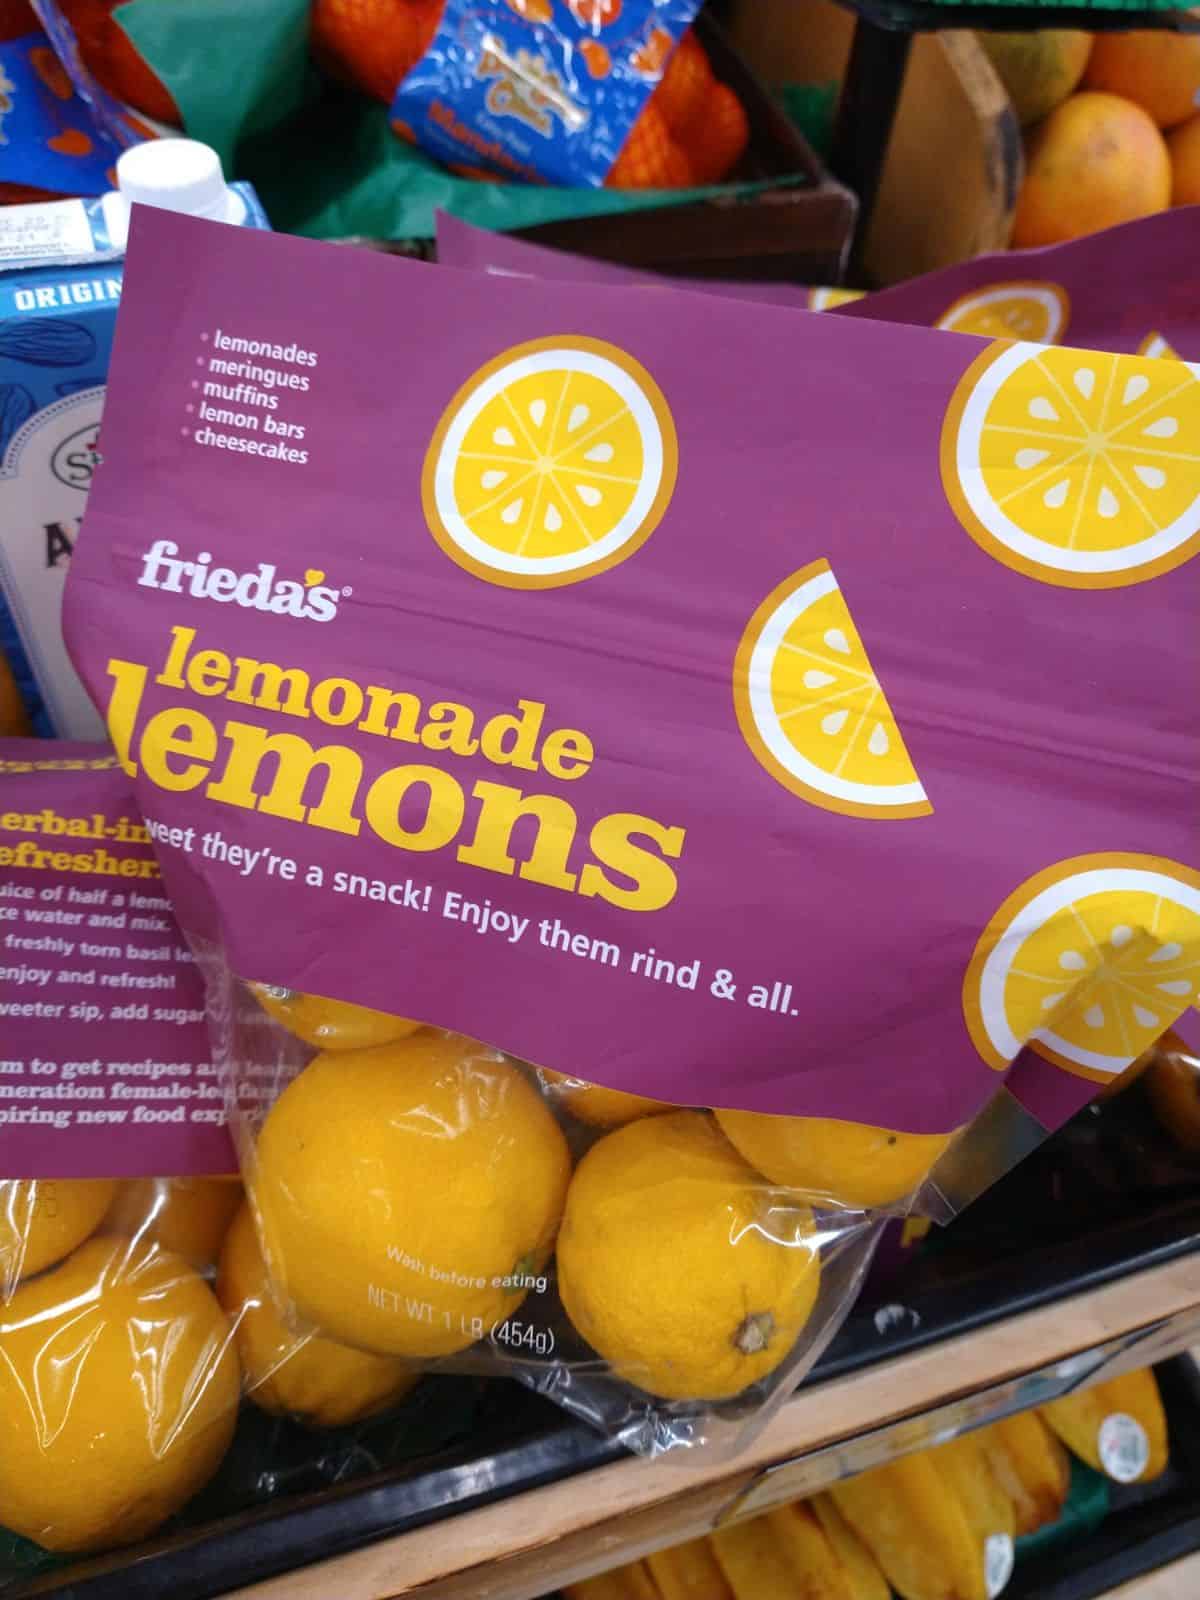 Bags of Frieda's Lemonade Lemons on display at a grocery store.